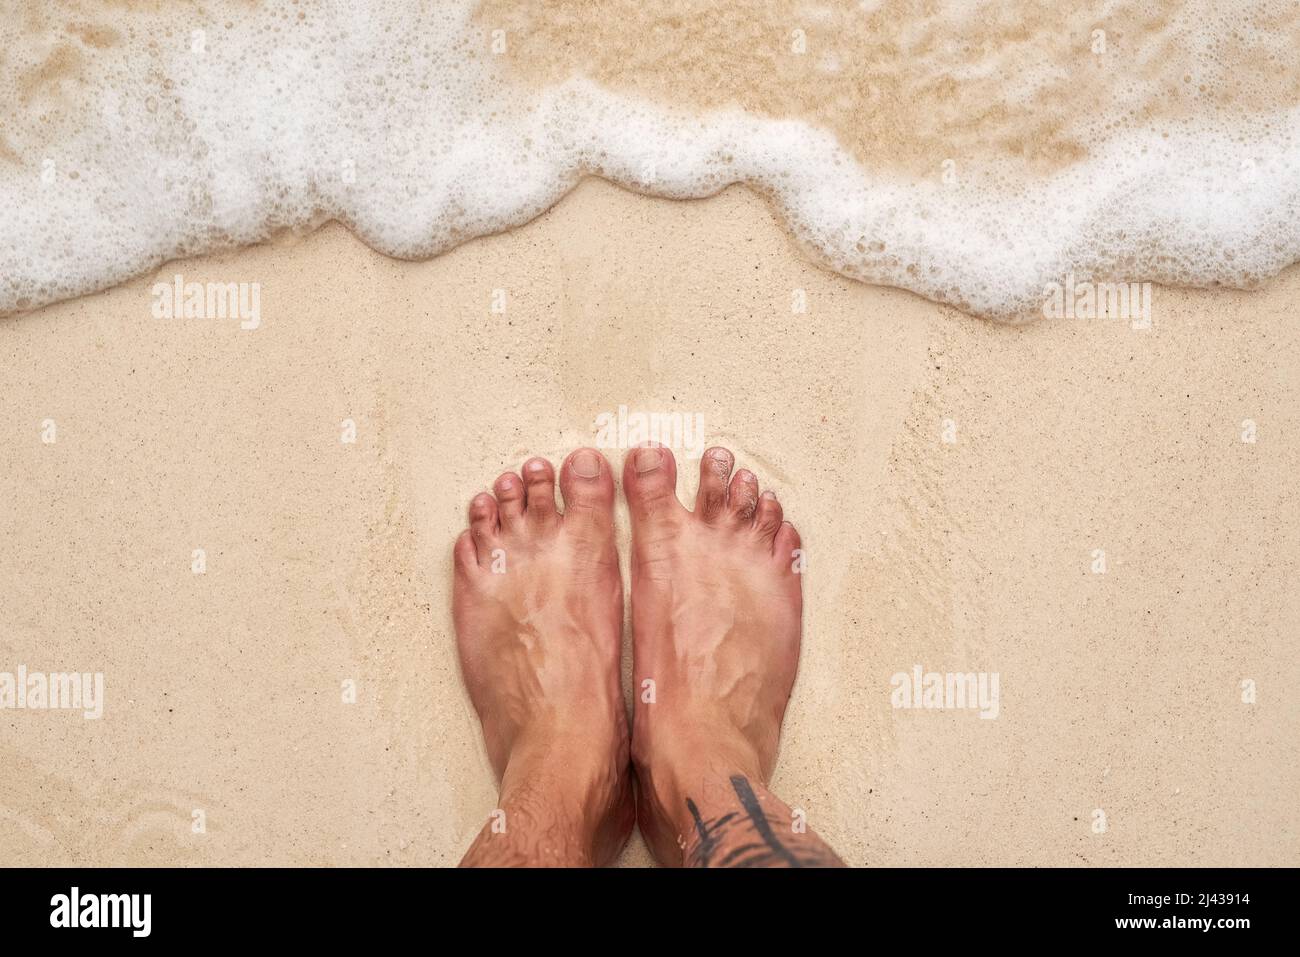 Salziges Haar und sandige Zehen. High-Angle-Aufnahme von den Füßen eines mannes am Strand. Stockfoto